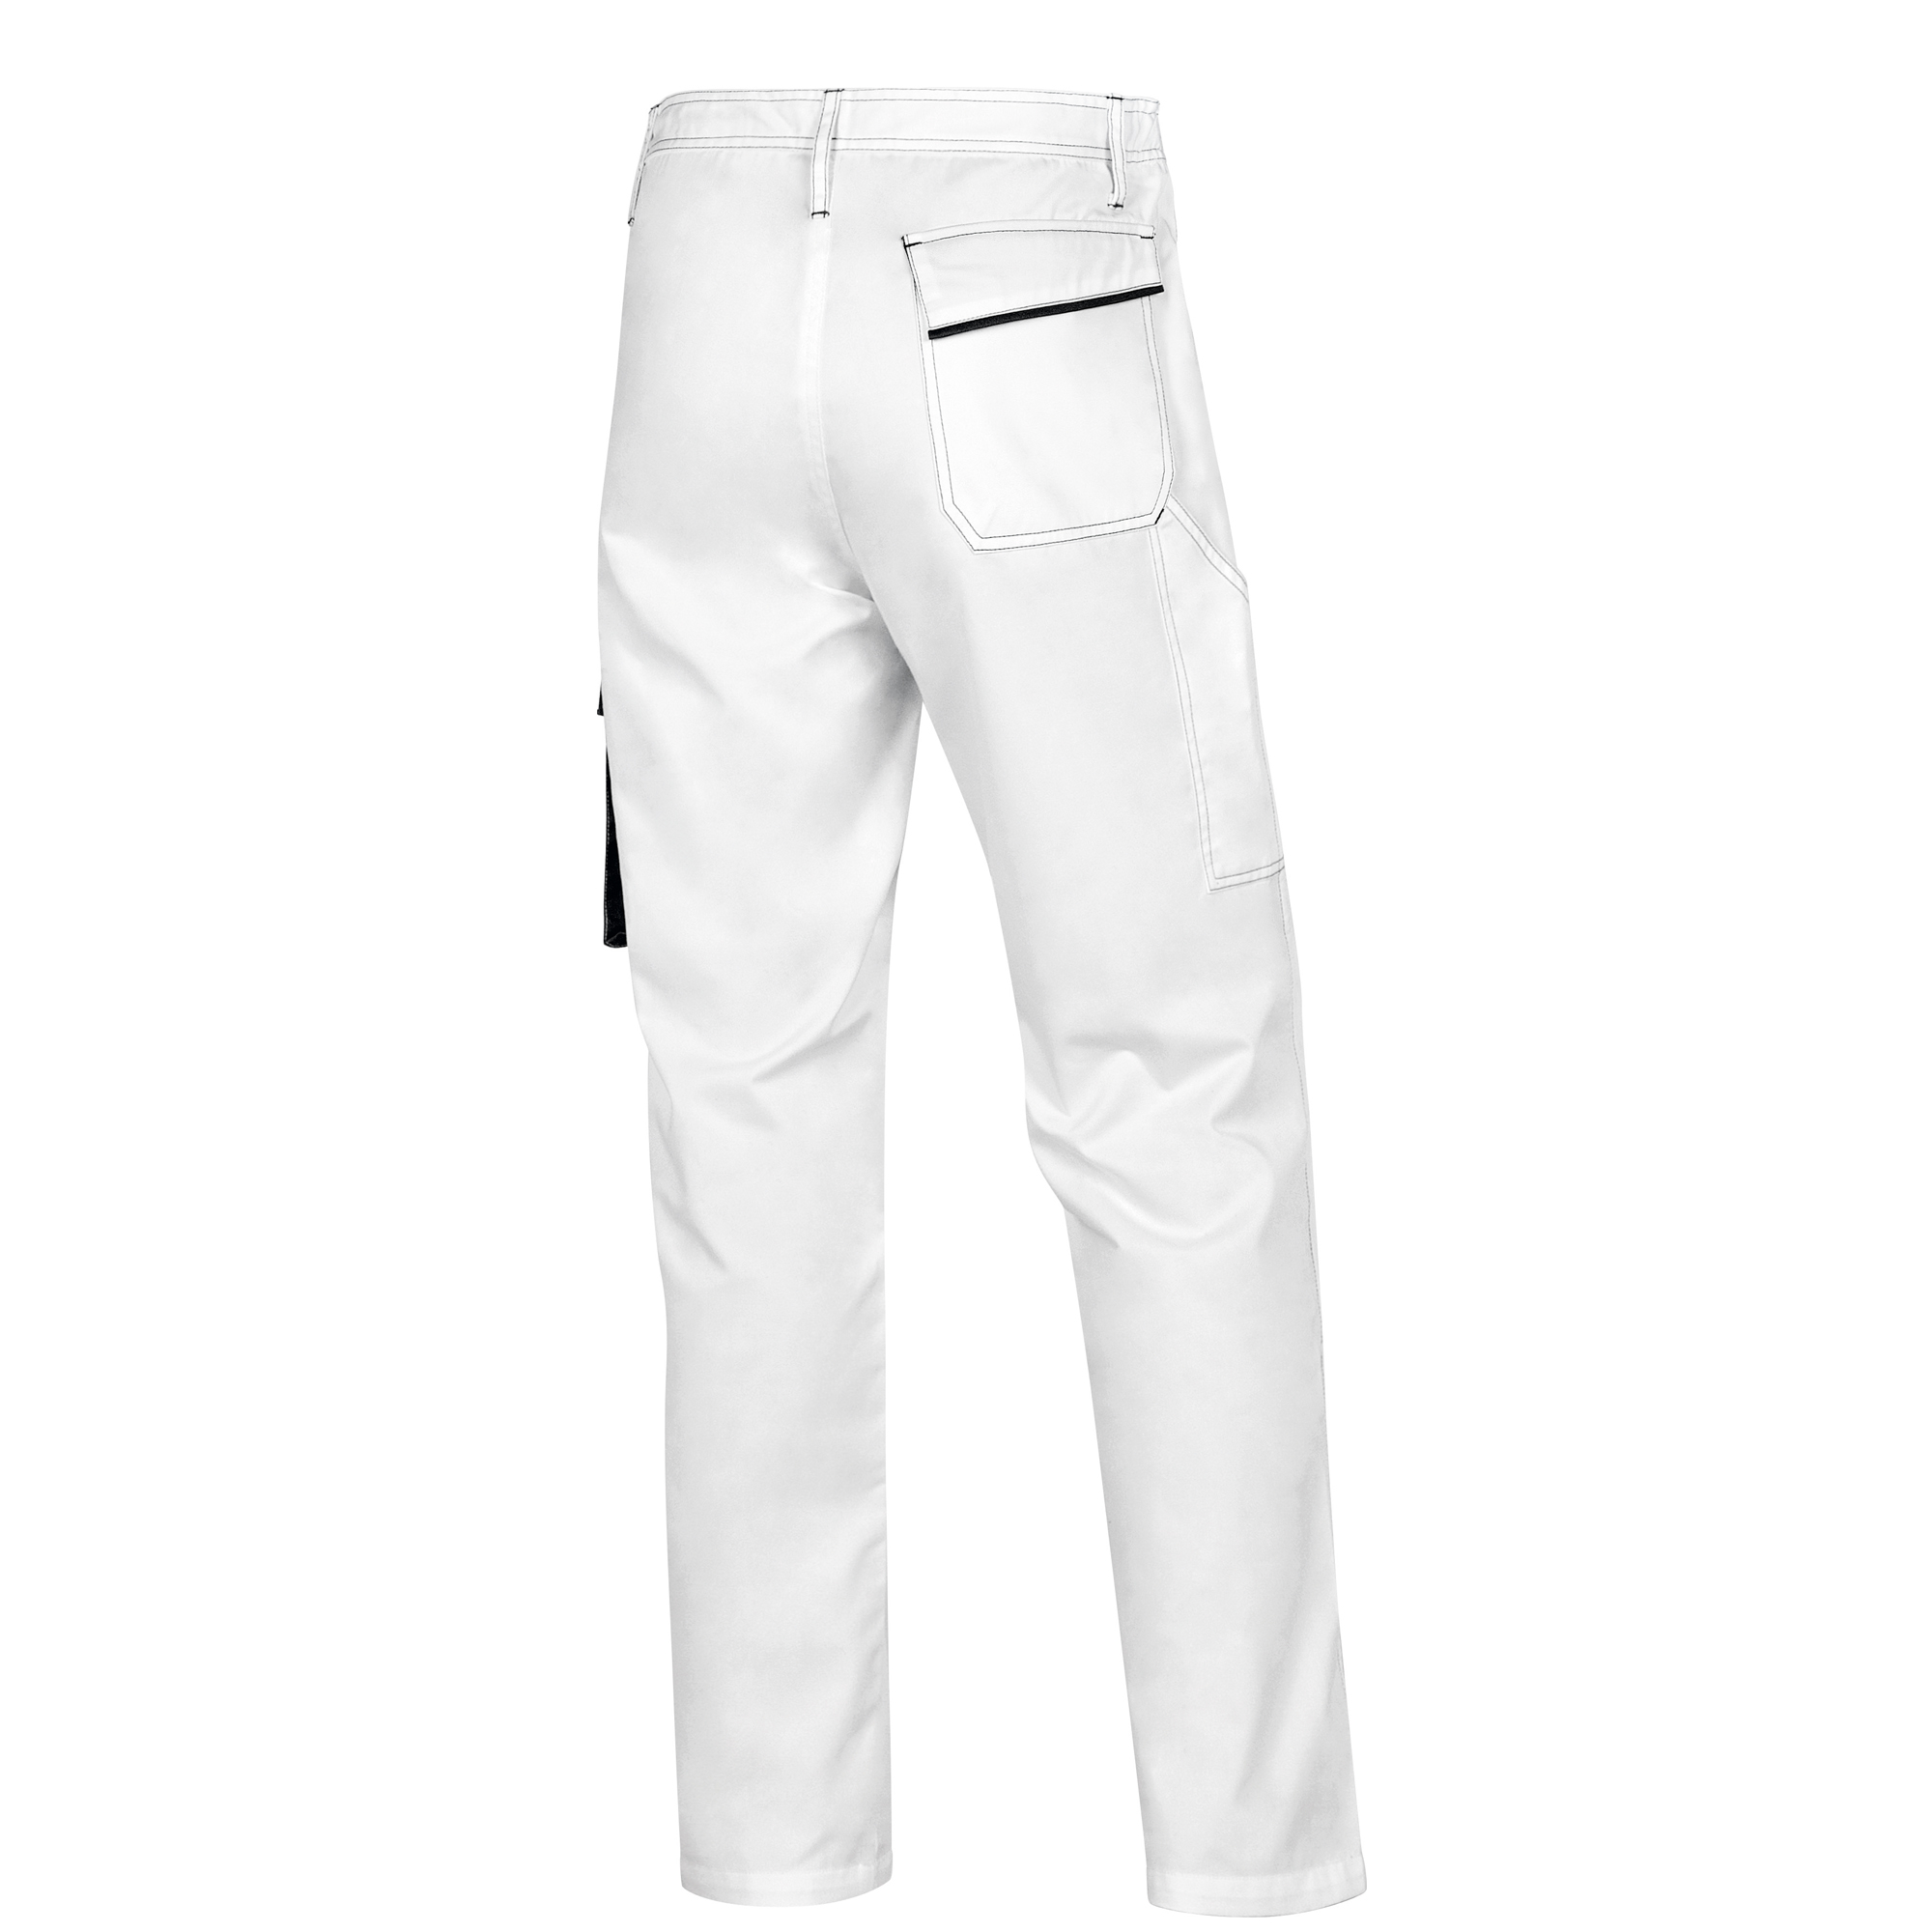 Pantalone da lavoro Panostyle M6PAN - sargia/poliestere/cotone -  bianco/grigio - taglia M - Deltaplus